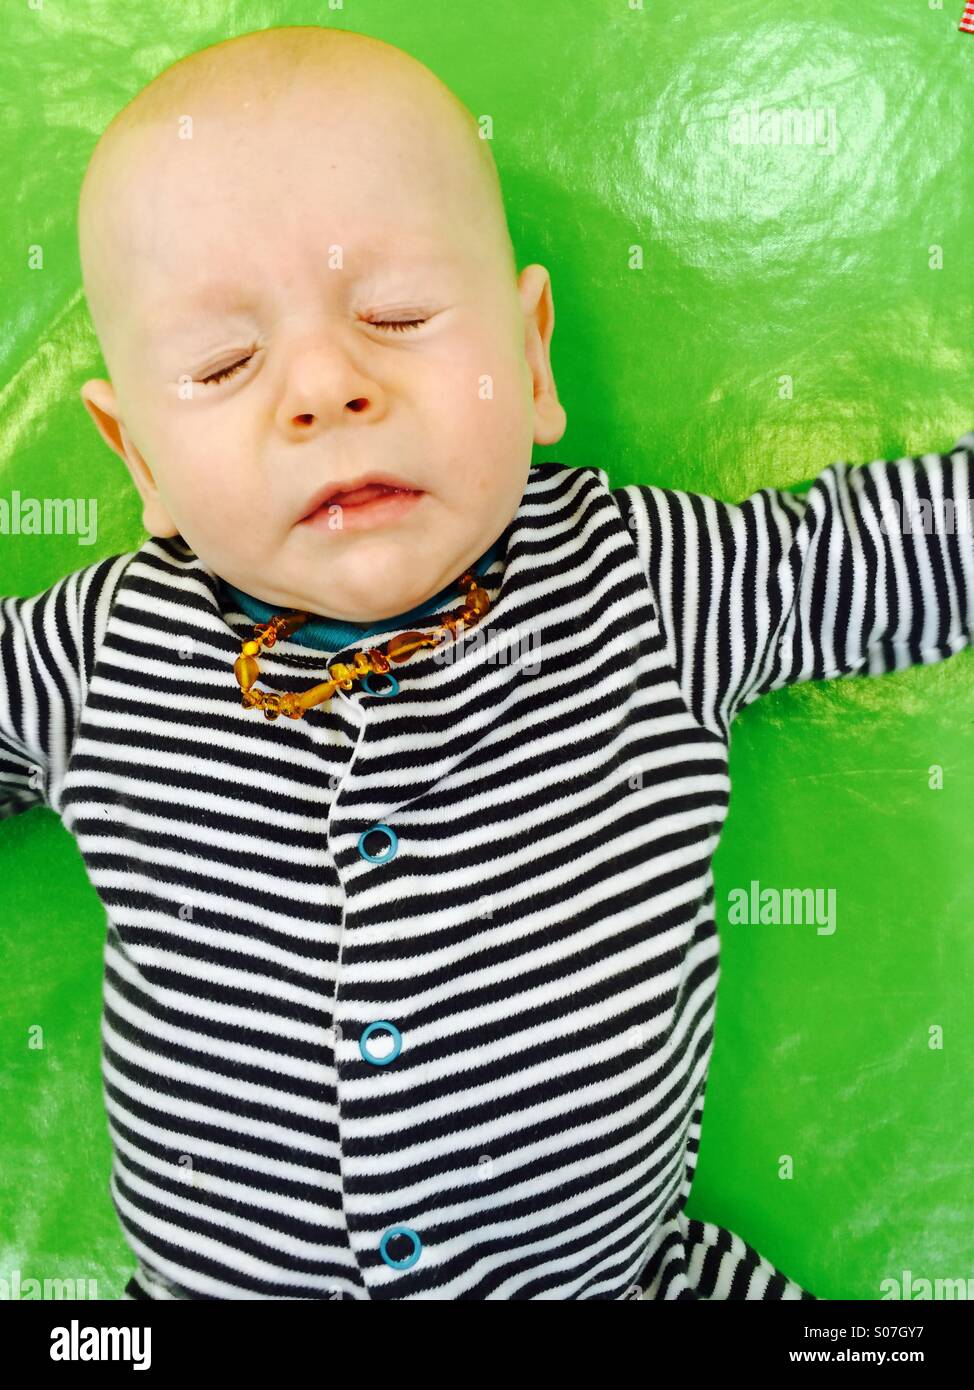 Un bébé de 3mois garçon portant un amber teething necklace l'éternuement Banque D'Images